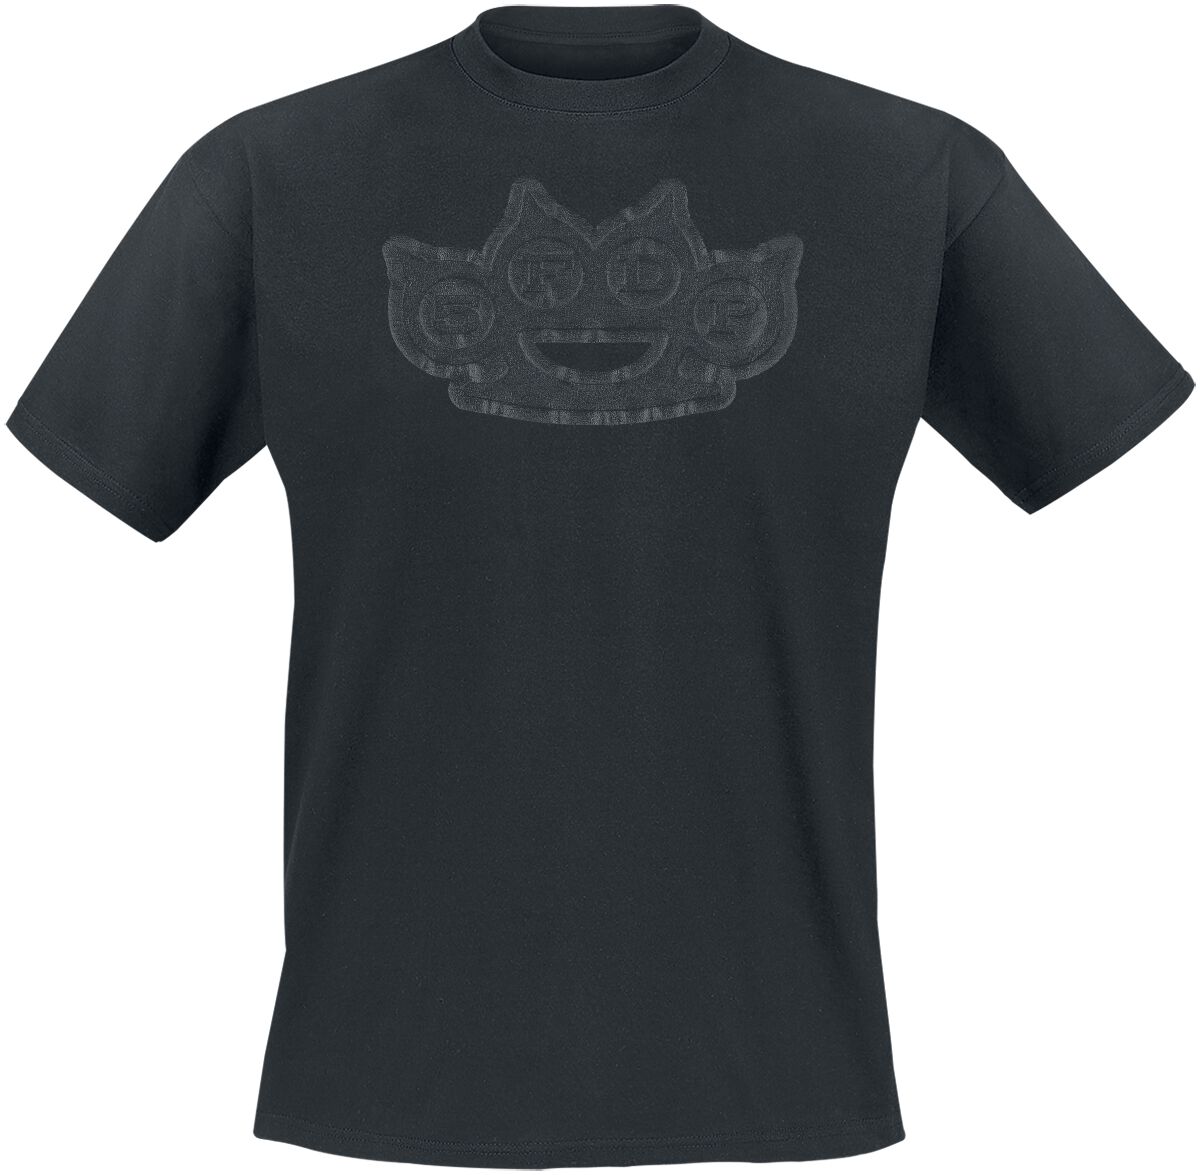 Five Finger Death Punch T-Shirt - Black On Black Knuckles - S bis 4XL - für Männer - Größe M - schwarz  - Lizenziertes Merchandise!